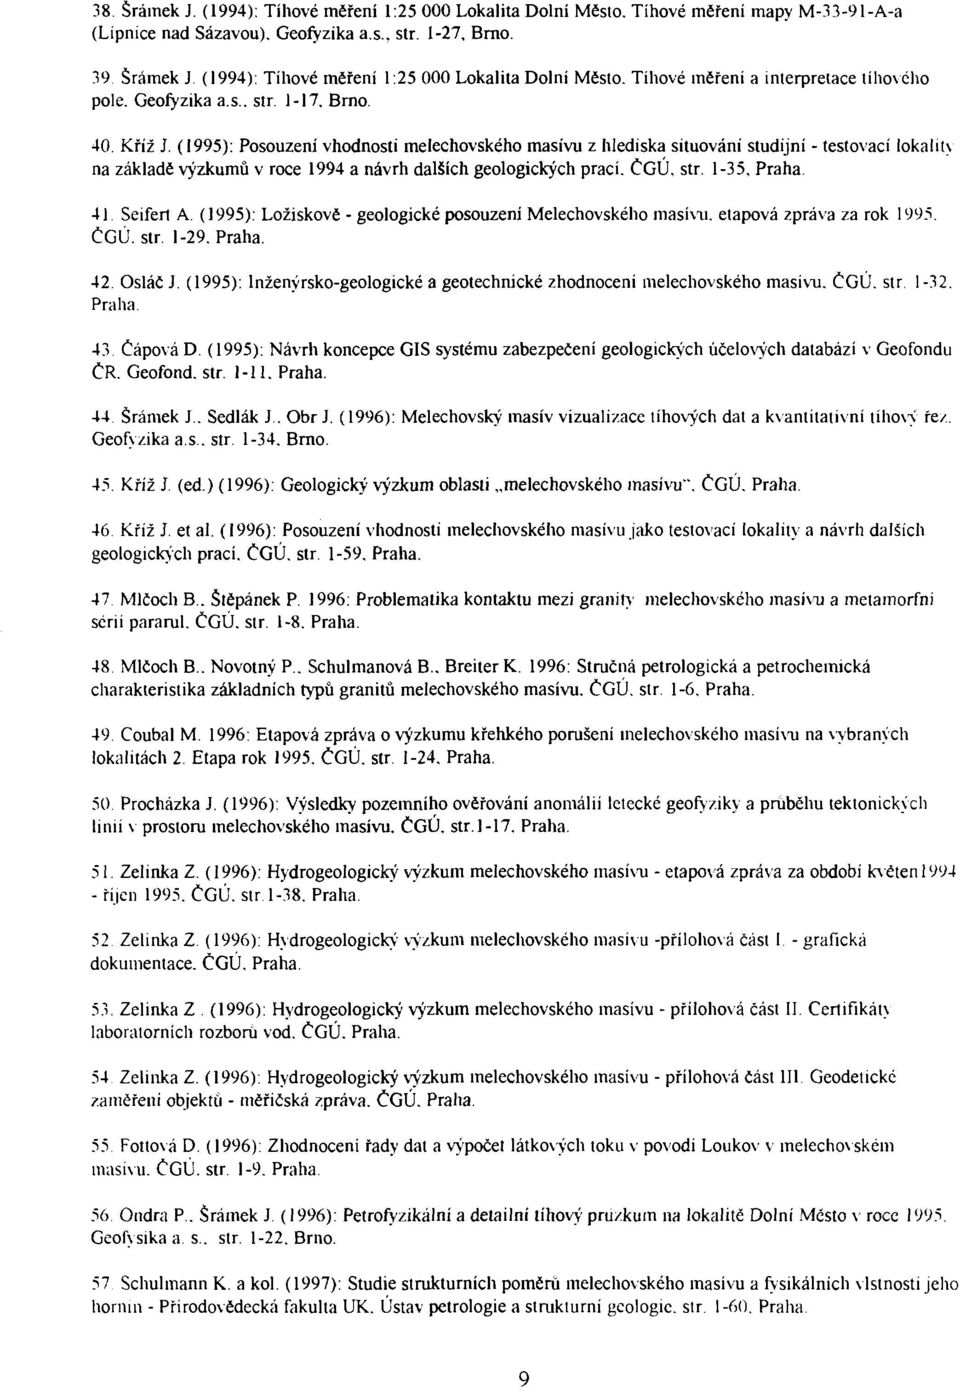 (1995): Posouzení vhodnosti melechovského masívu z hlediska situování studijní - testovací lokality na základě výzkumů v roce 1994 a návrh dalších geologických prací. ČGÚ, str. 1-35, Praha.